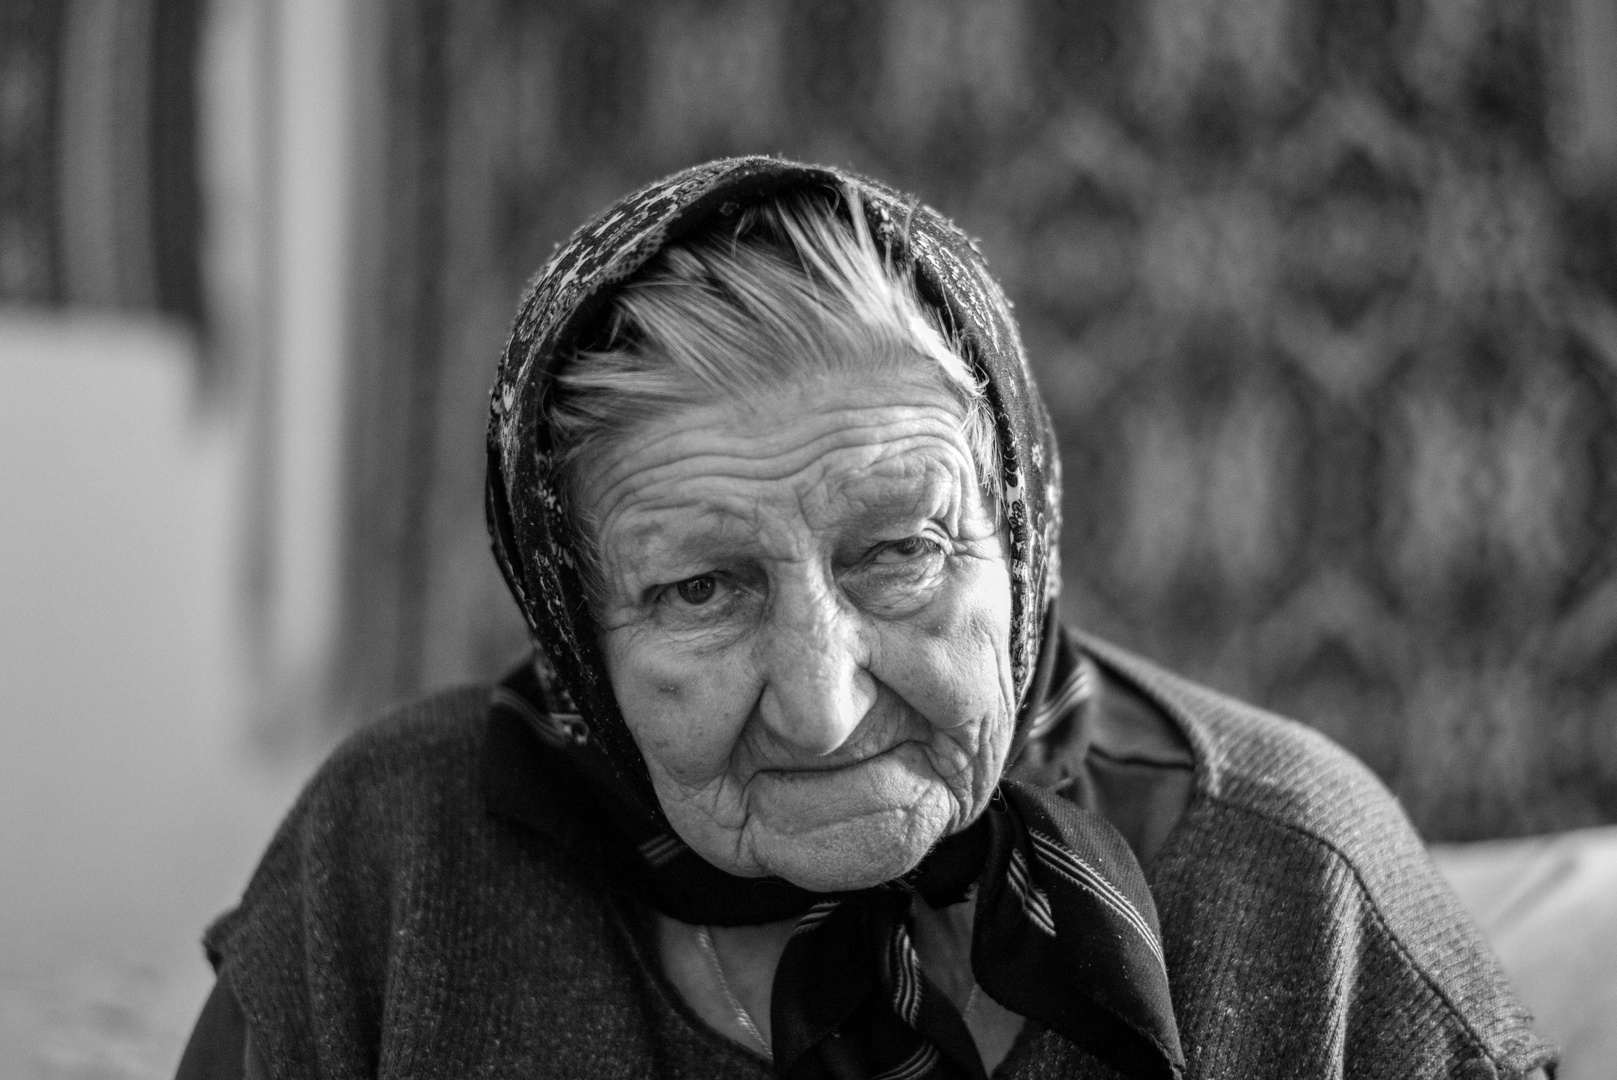 Ukrainische Rentnerin